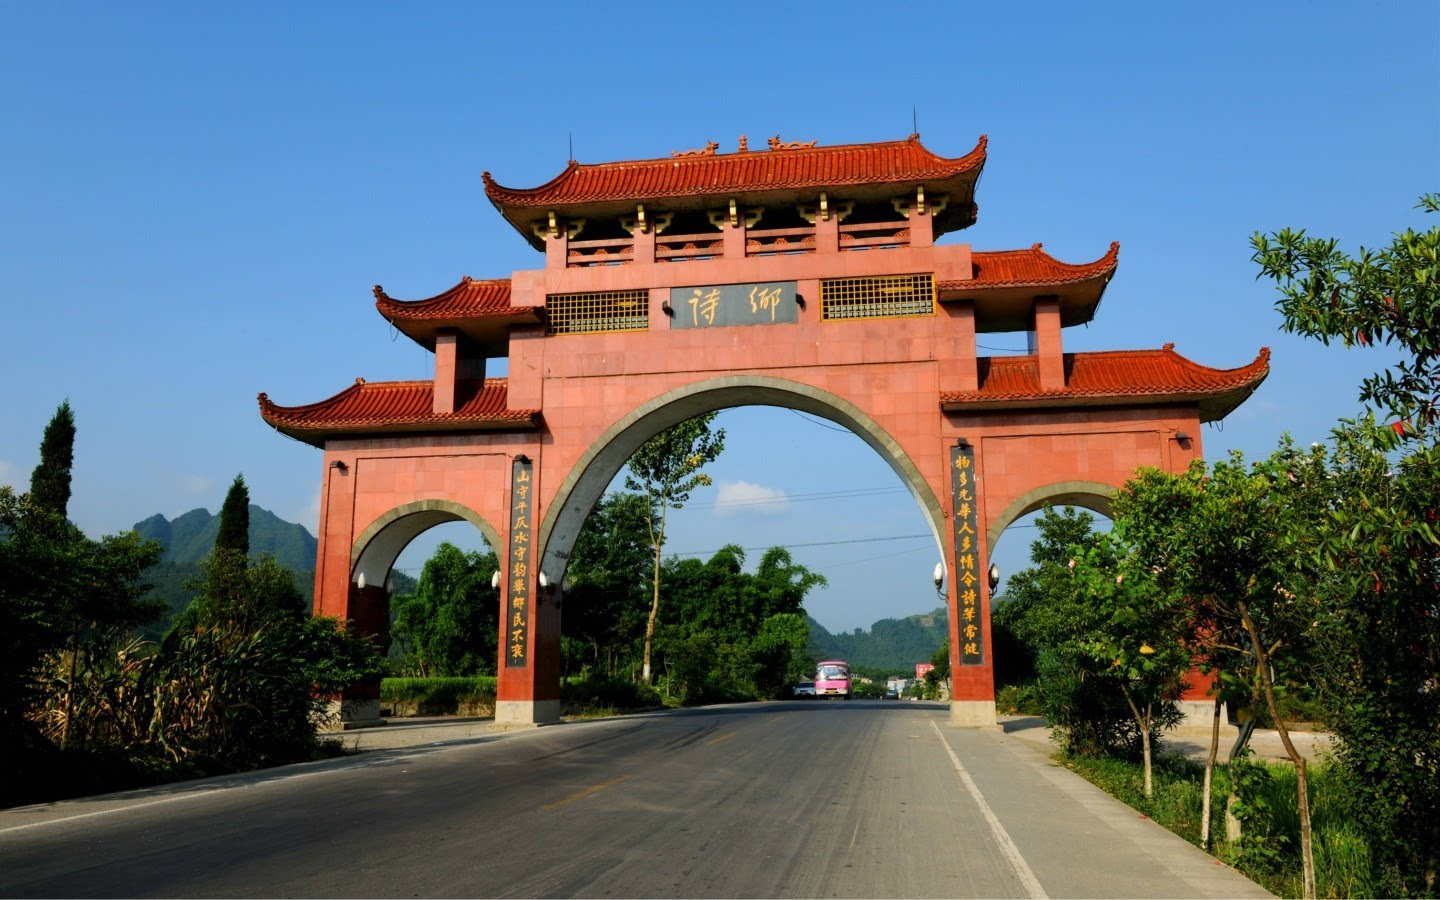 1993年3月,贵州省文化厅命名绥阳县为"诗乡".